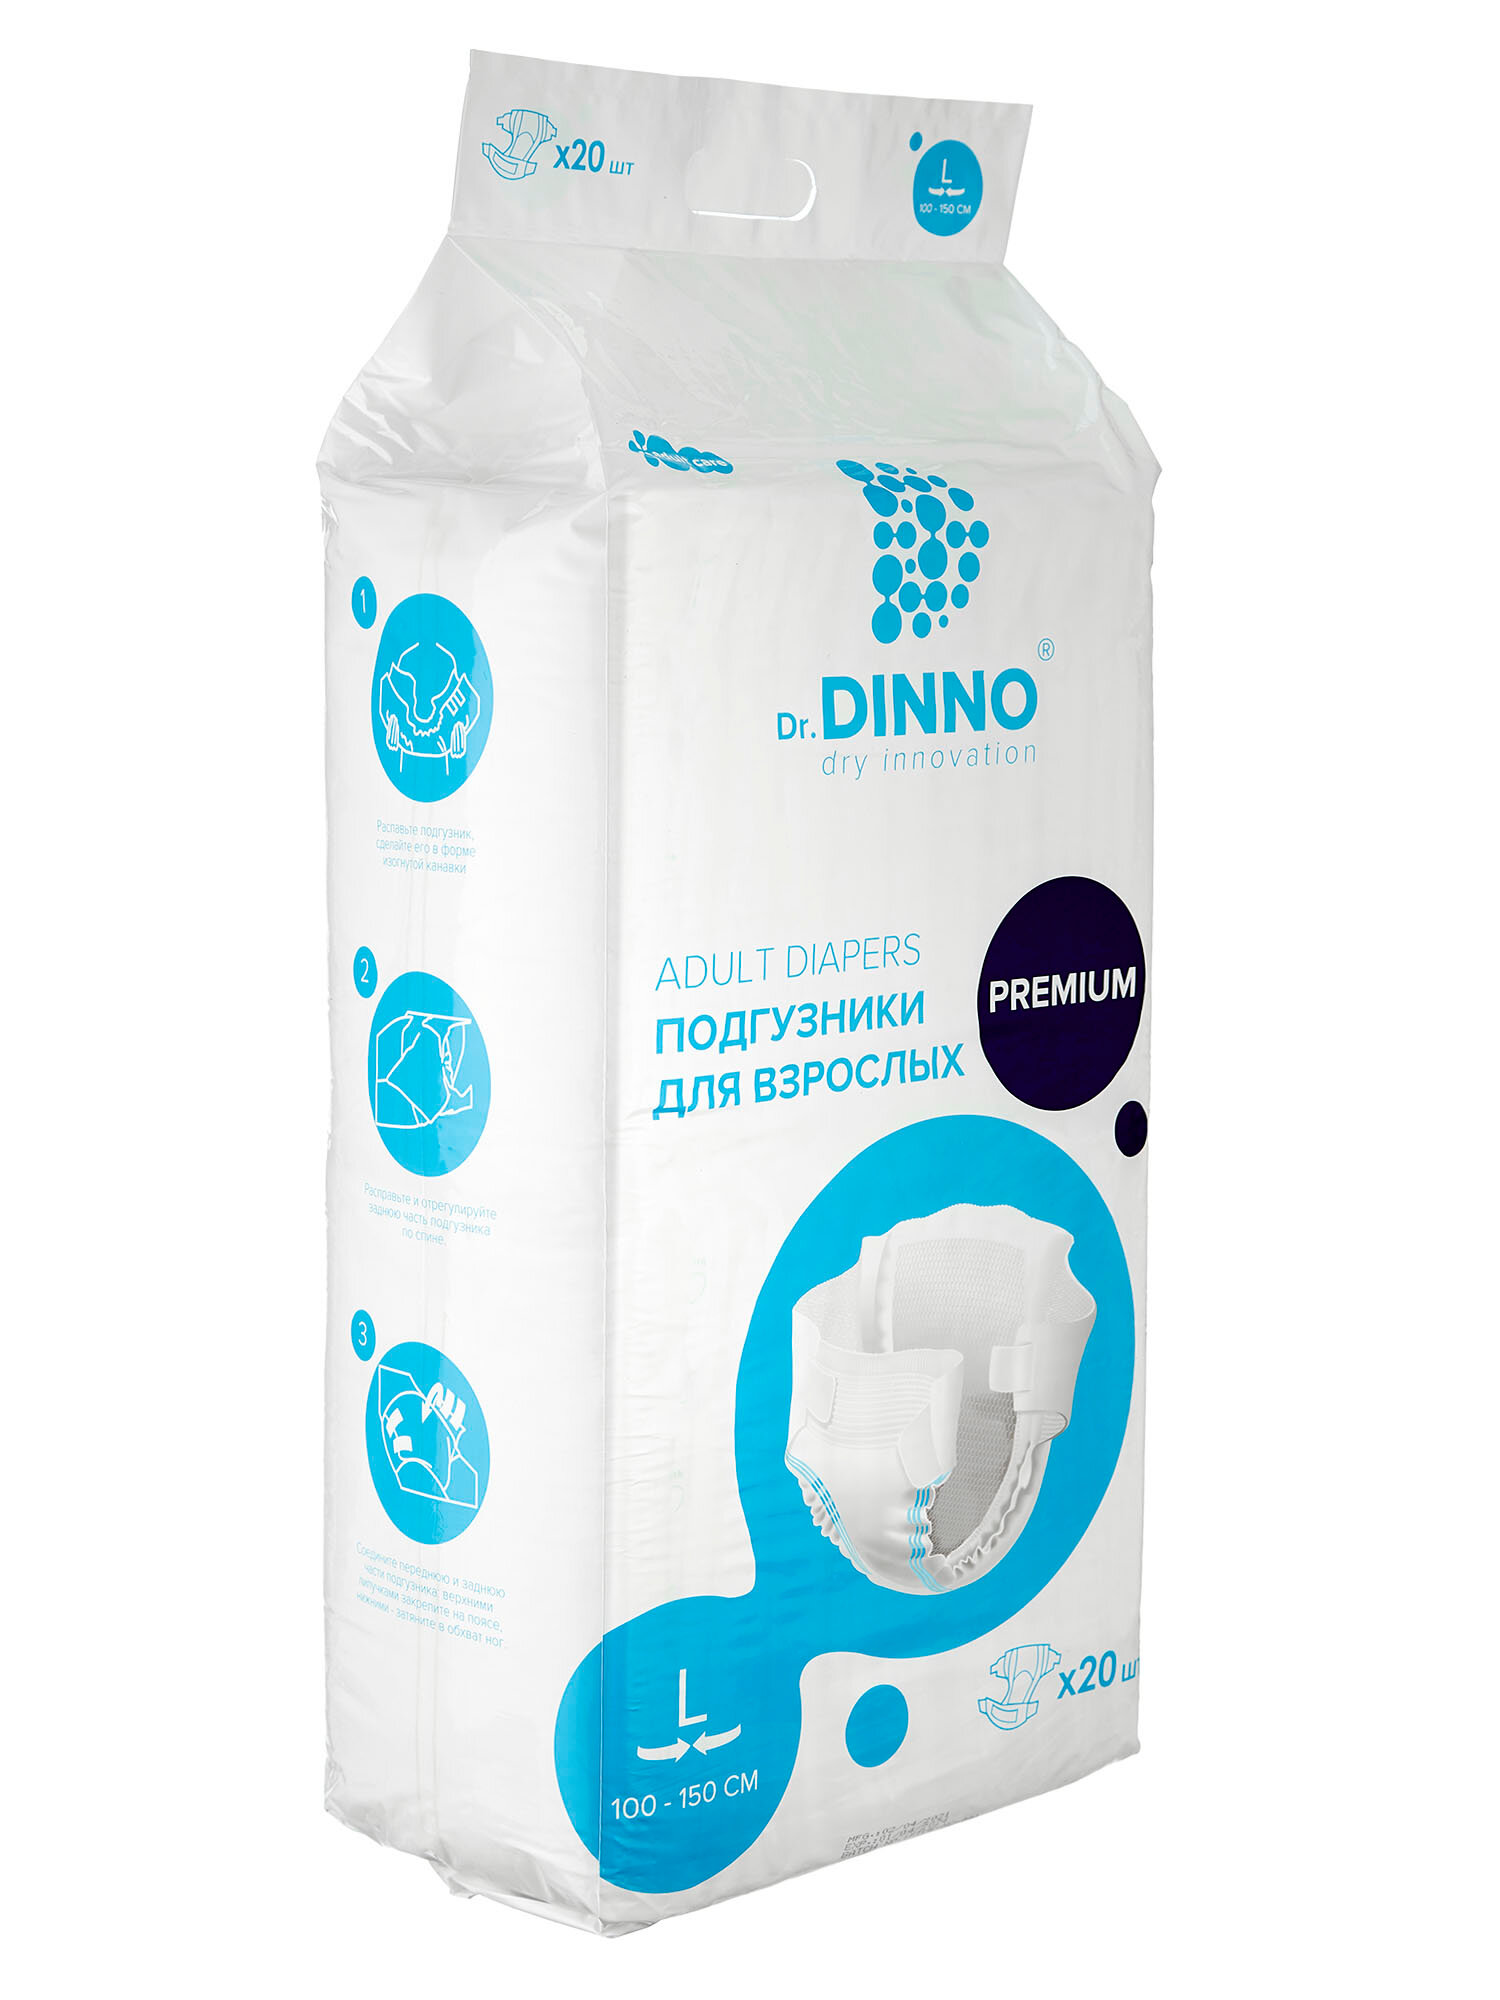 Подгузники для взрослых Dr.DINNO Premium размер L 20 шт